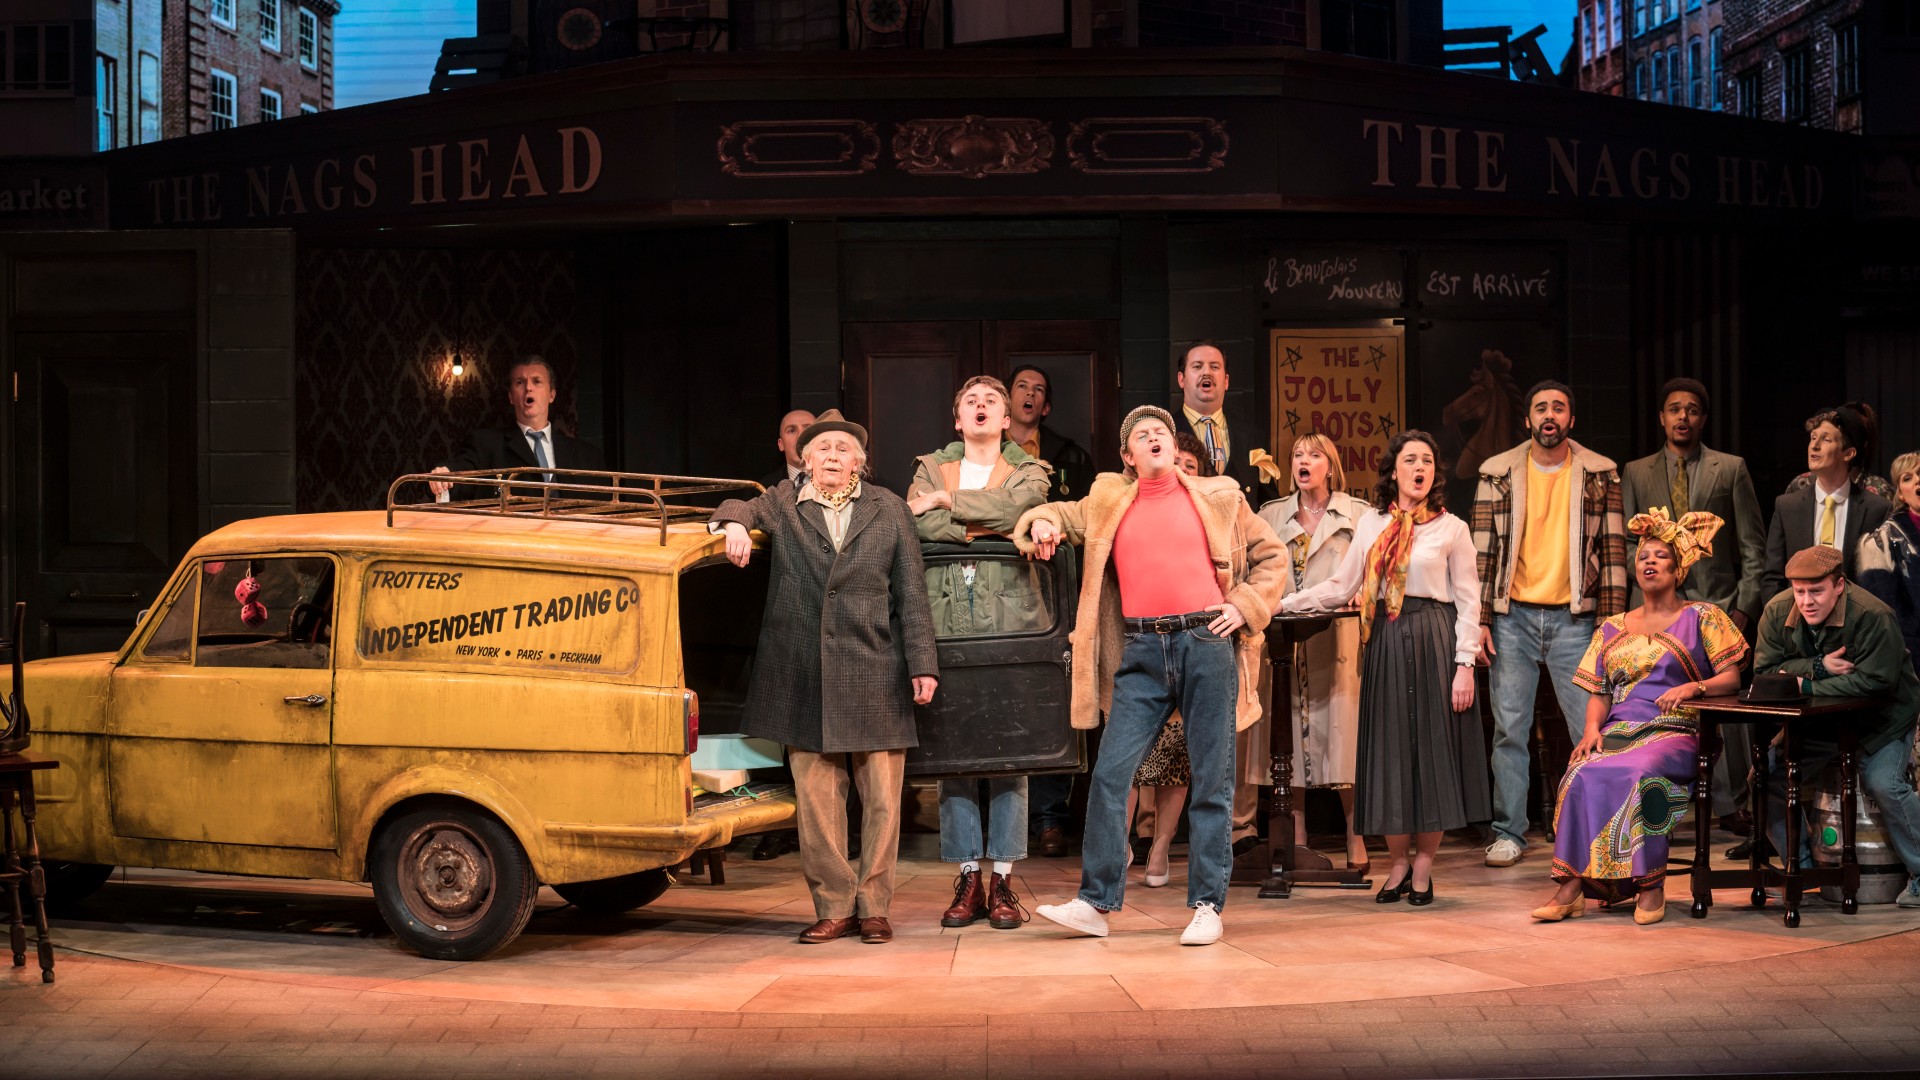 Die Darsteller von Only Fools and Horses singen auf der Bühne, mit einem gelben Auto auf der linken Seite des Bildes